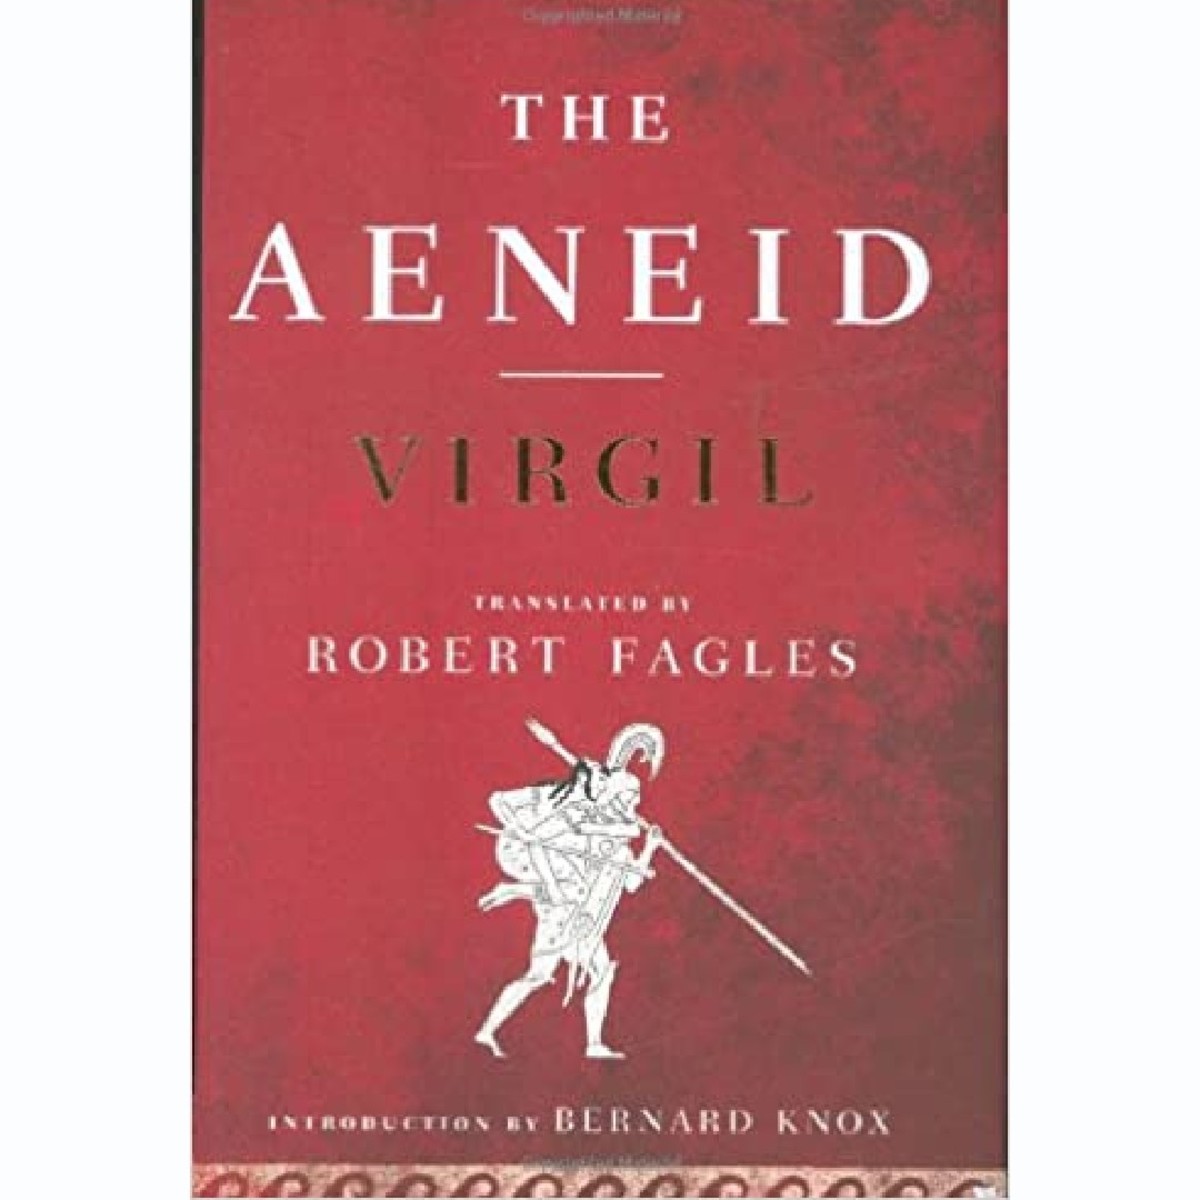 'The Aeneid' by Virgil